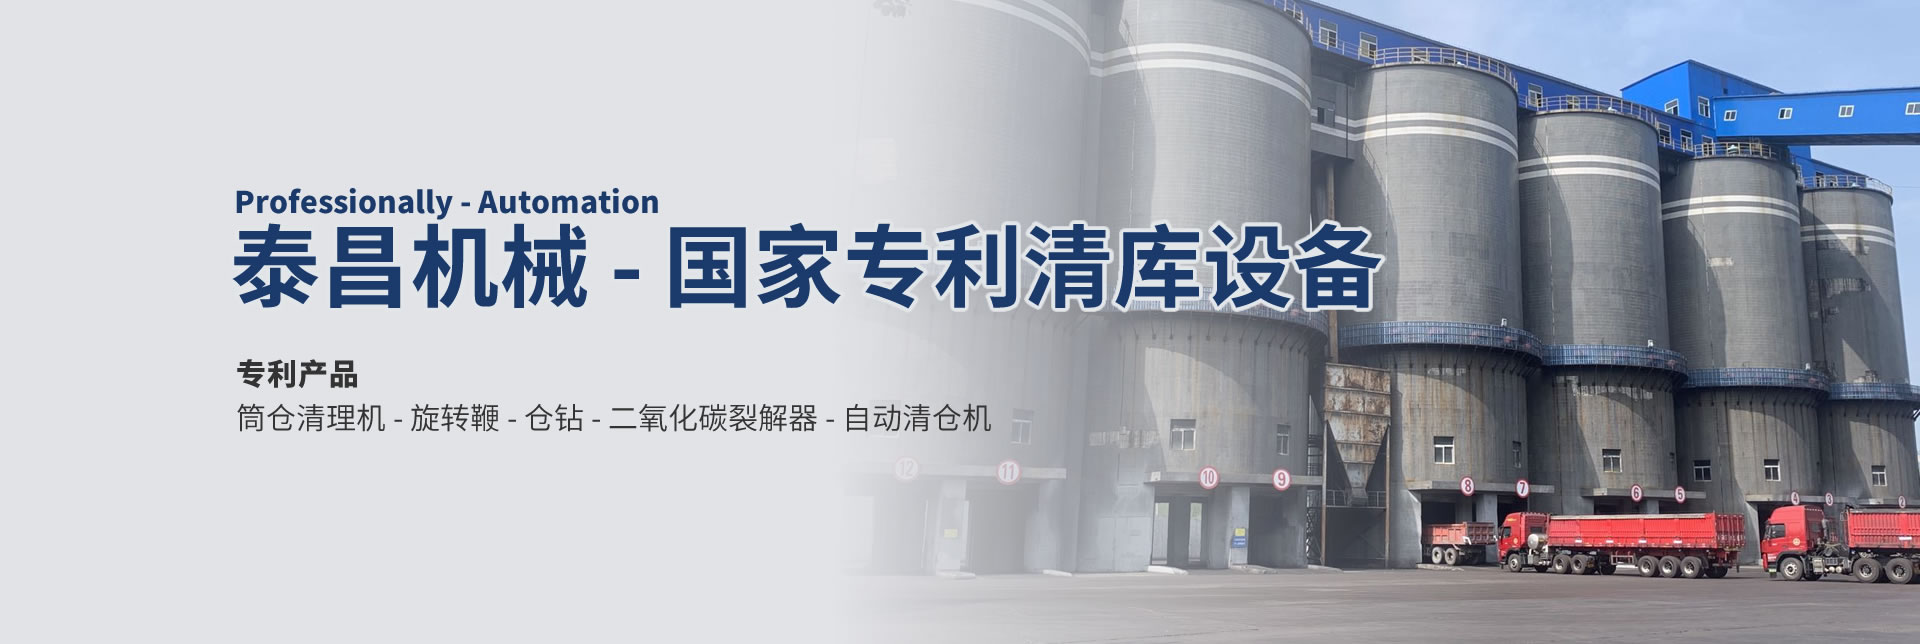 广州市泰昌机械设备有限公司